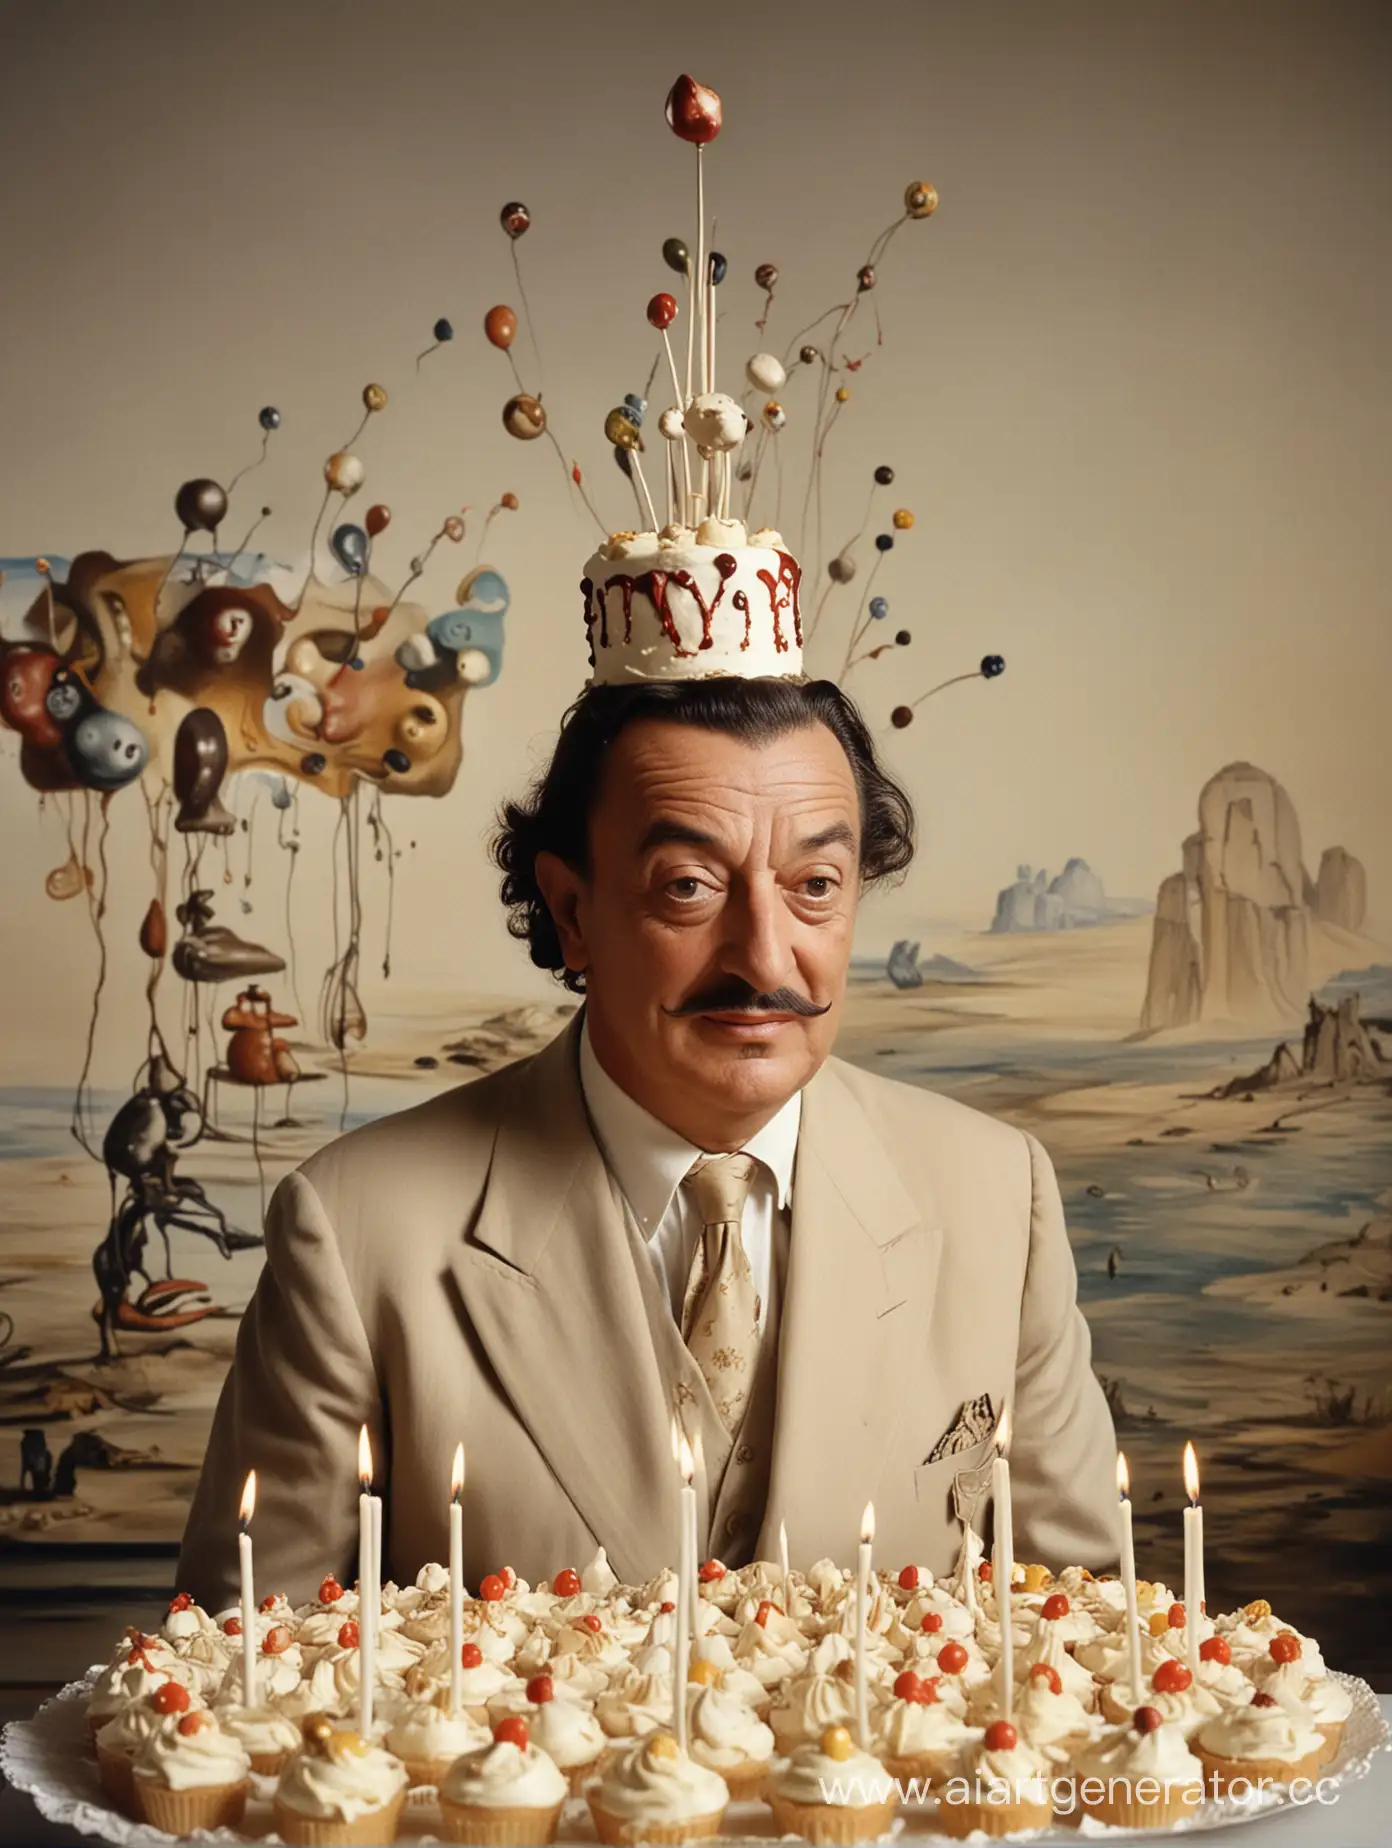 Художник Сальвадор Дали с колпаком на голове, шарами за спиной на фоне своих картин и с тортом в сто двадцать свечей и